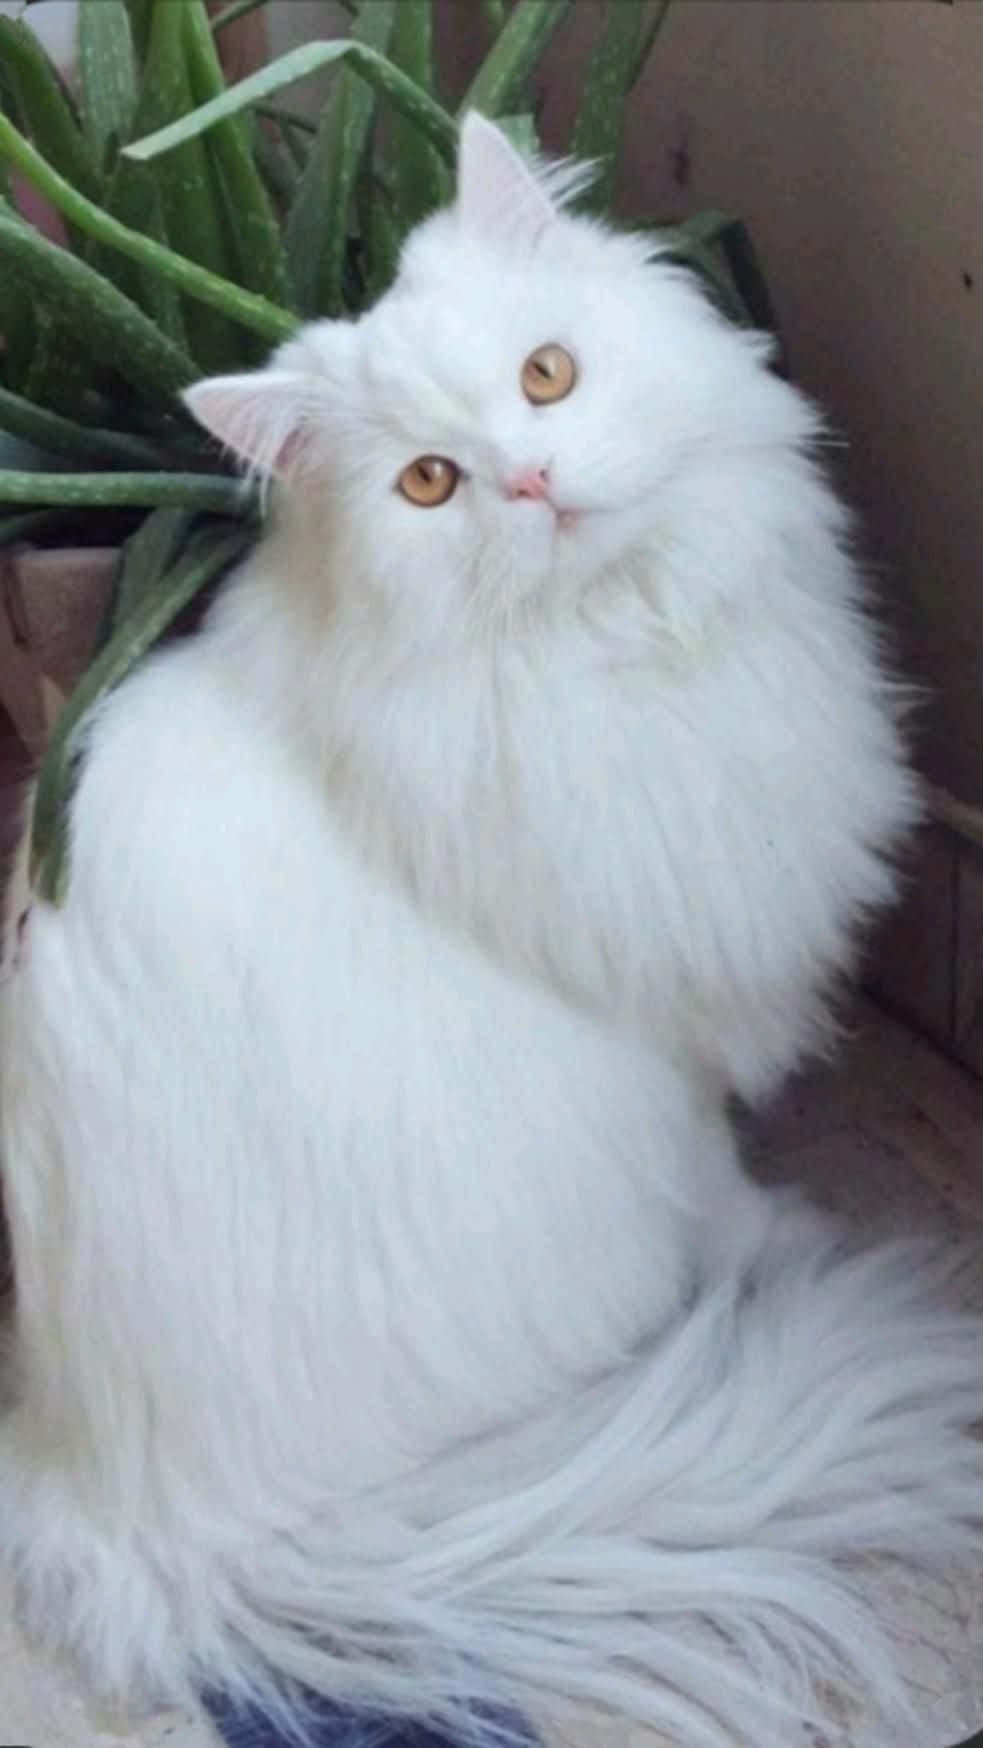 Imagende Un Gato Blanco Con Ojos Naranjas